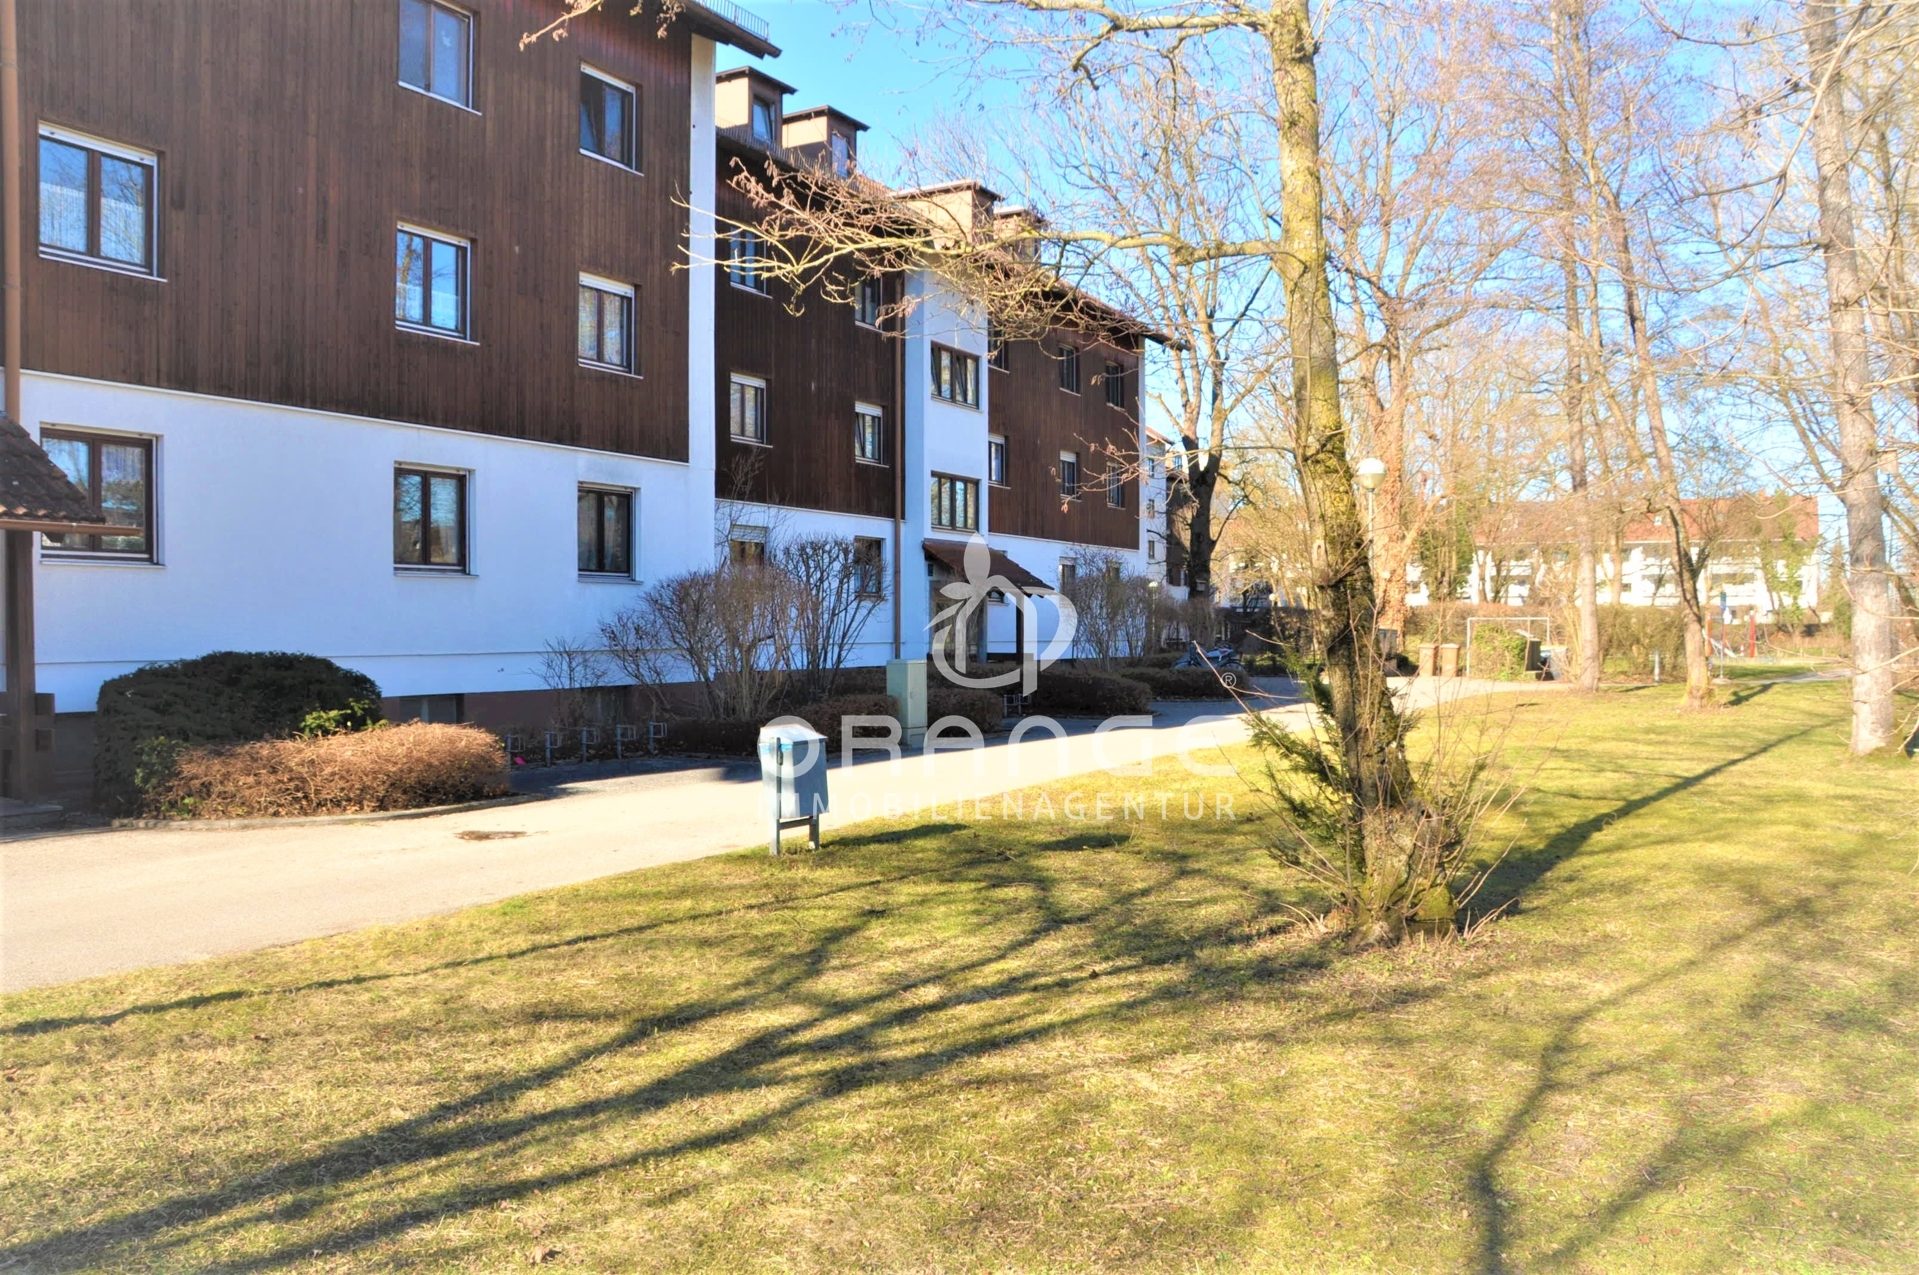 Immobilienangebot - Oberschleißheim - Alle - TOLLE EG TERRASSEN WOHNUNG IN RUHIGER LAGE MIT KLEINEM GARTEN